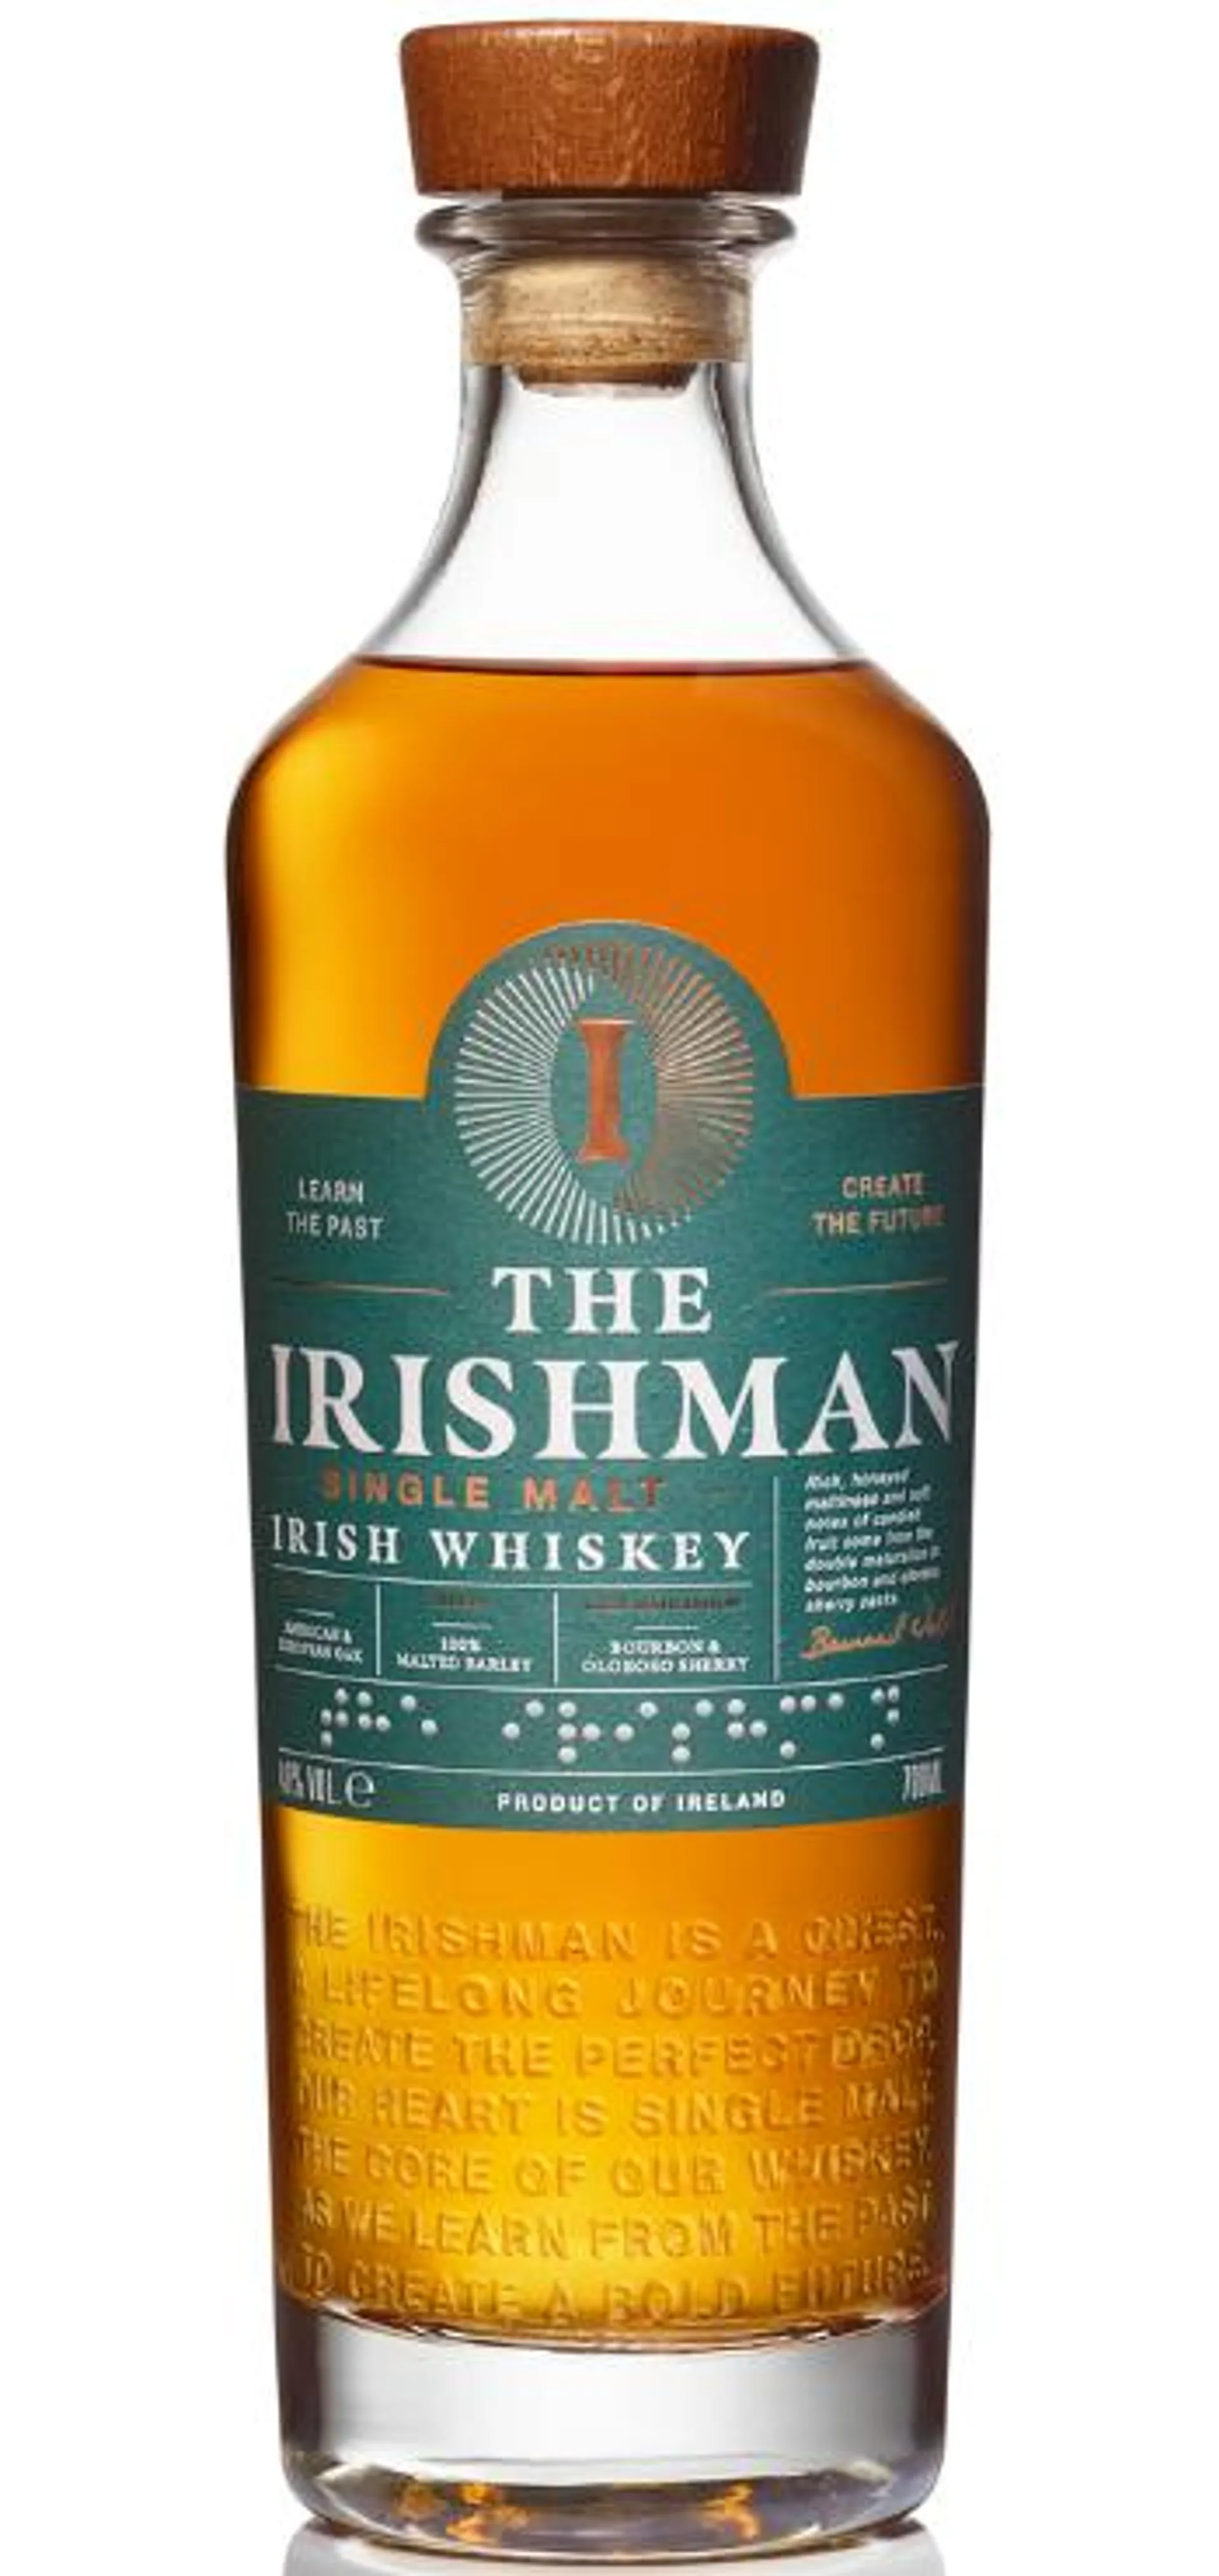 The Irishman Single Malt Irish Whiskey 700 ml, 40% ABV